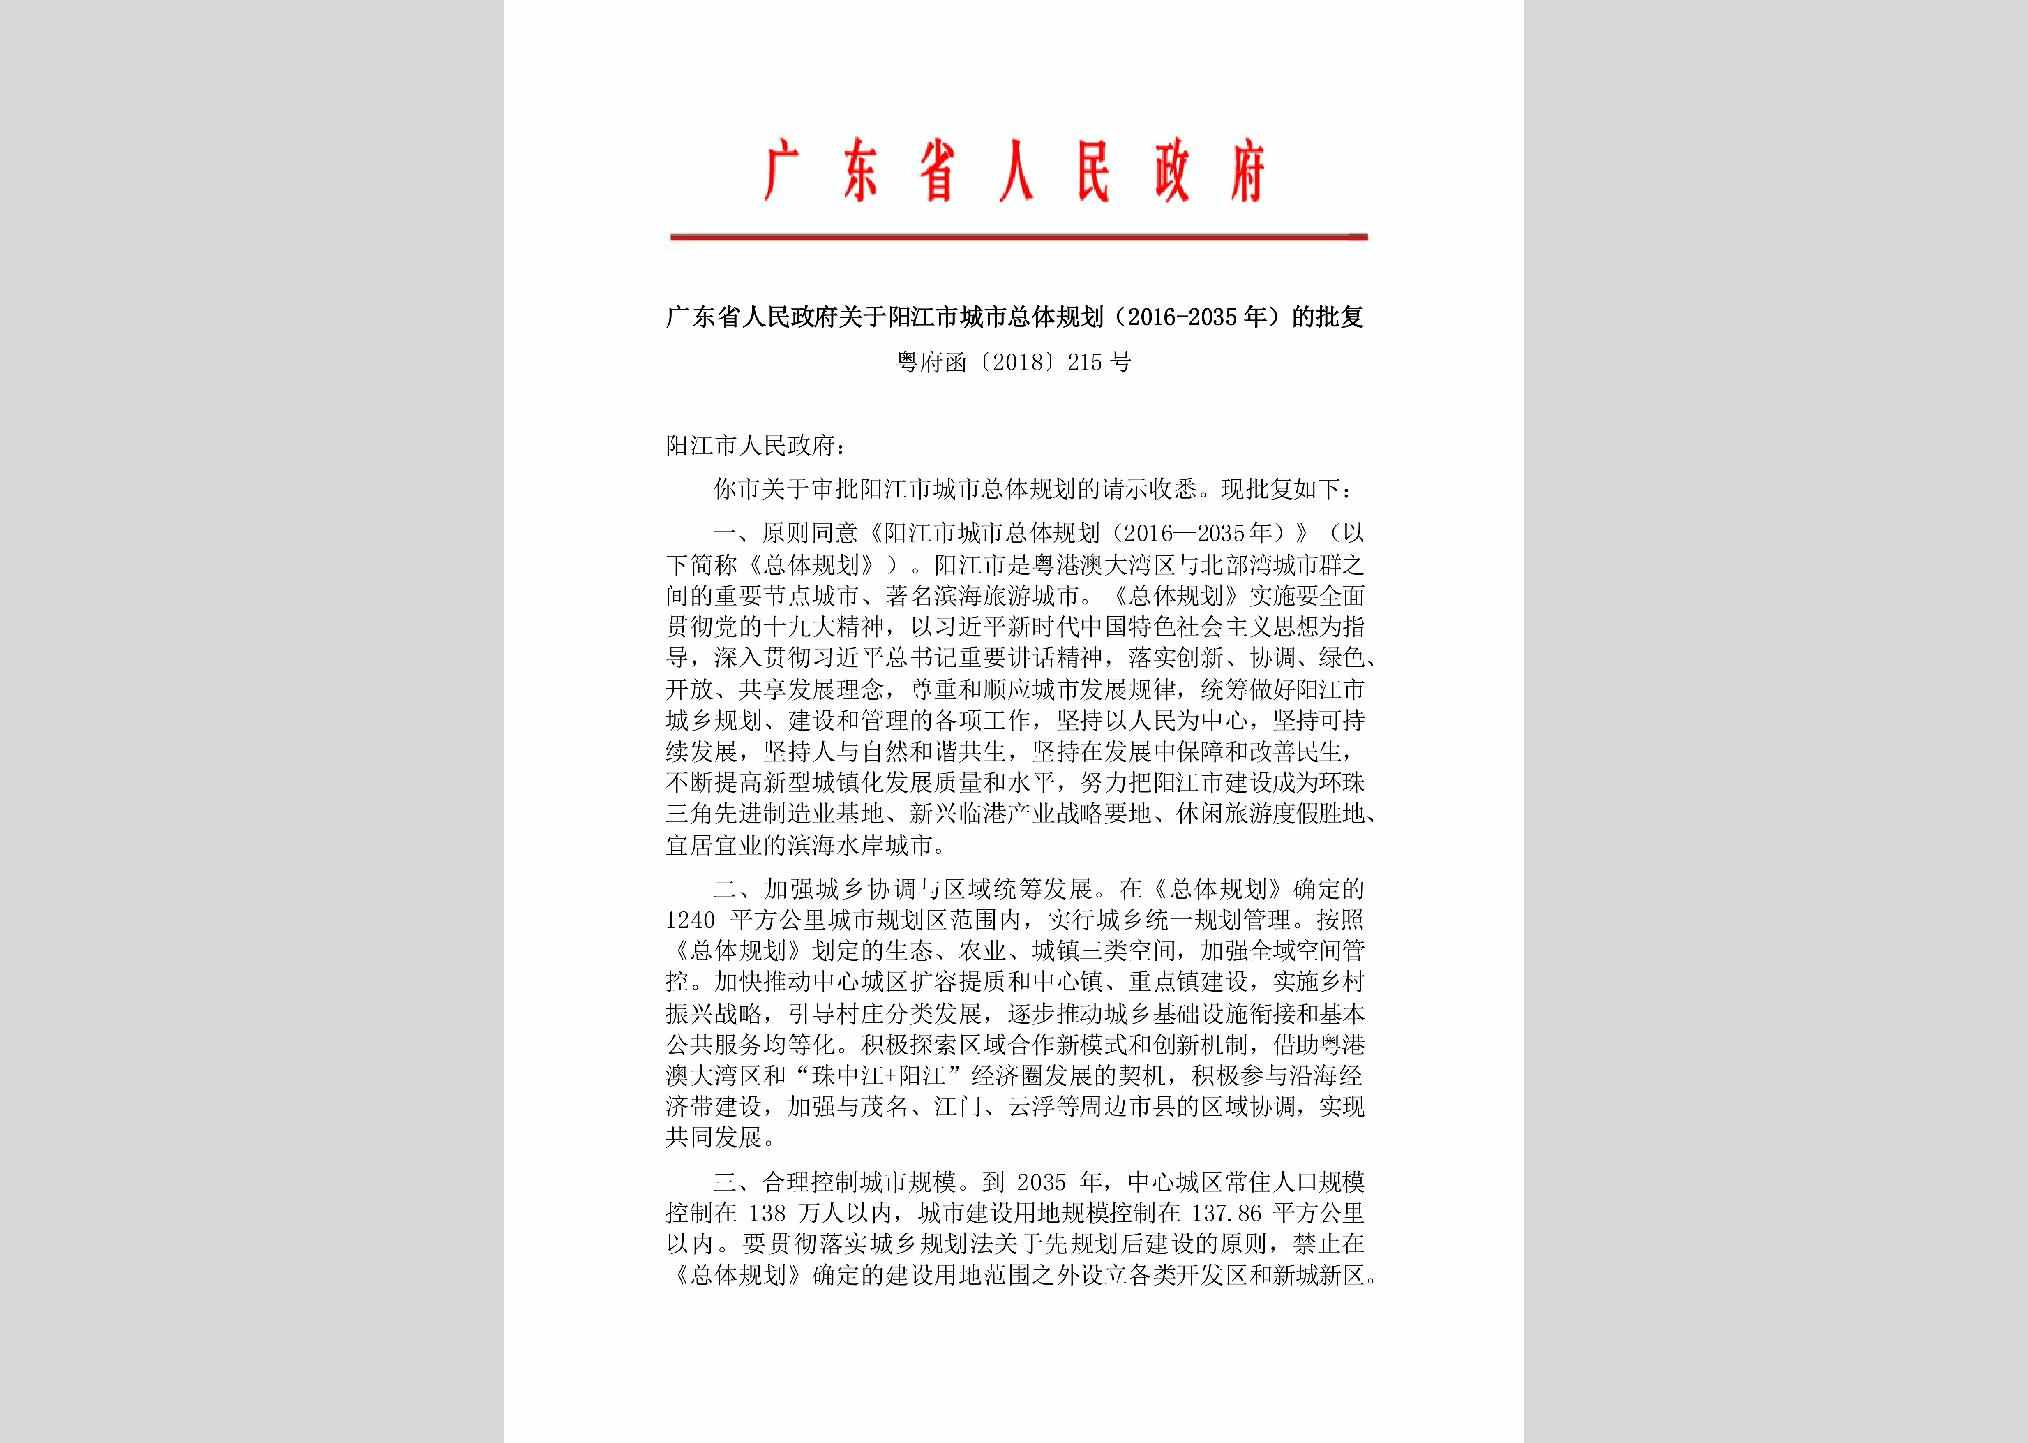 粤府函[2018]215号：广东省人民政府关于阳江市城市总体规划(2016-2035年)的批复